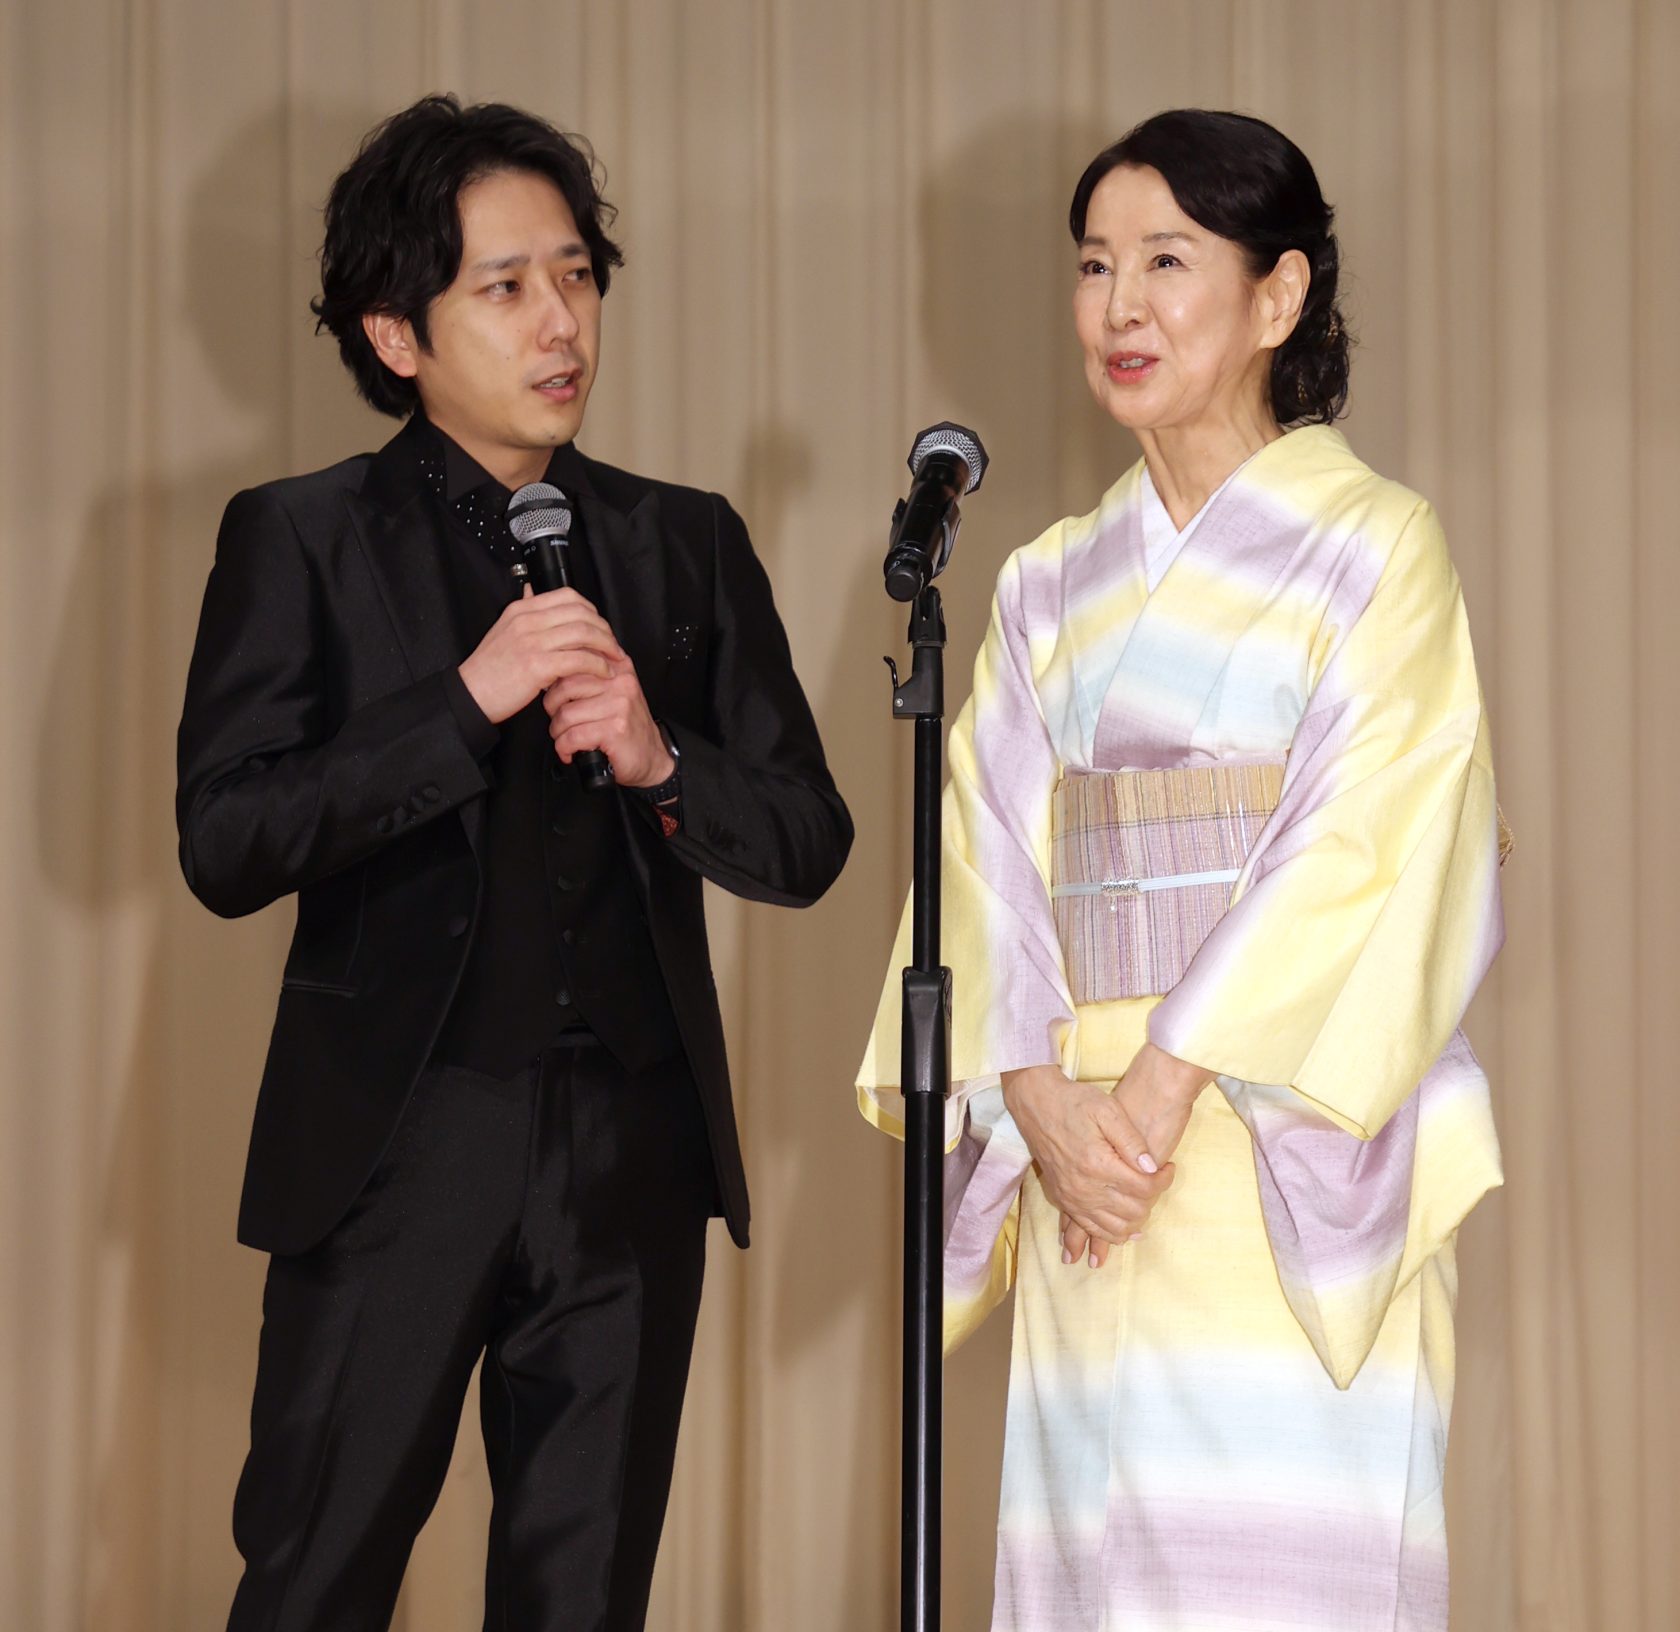 ブルーリボン賞授賞式でトークする司会の二宮和也と主演女優賞の吉永小百合